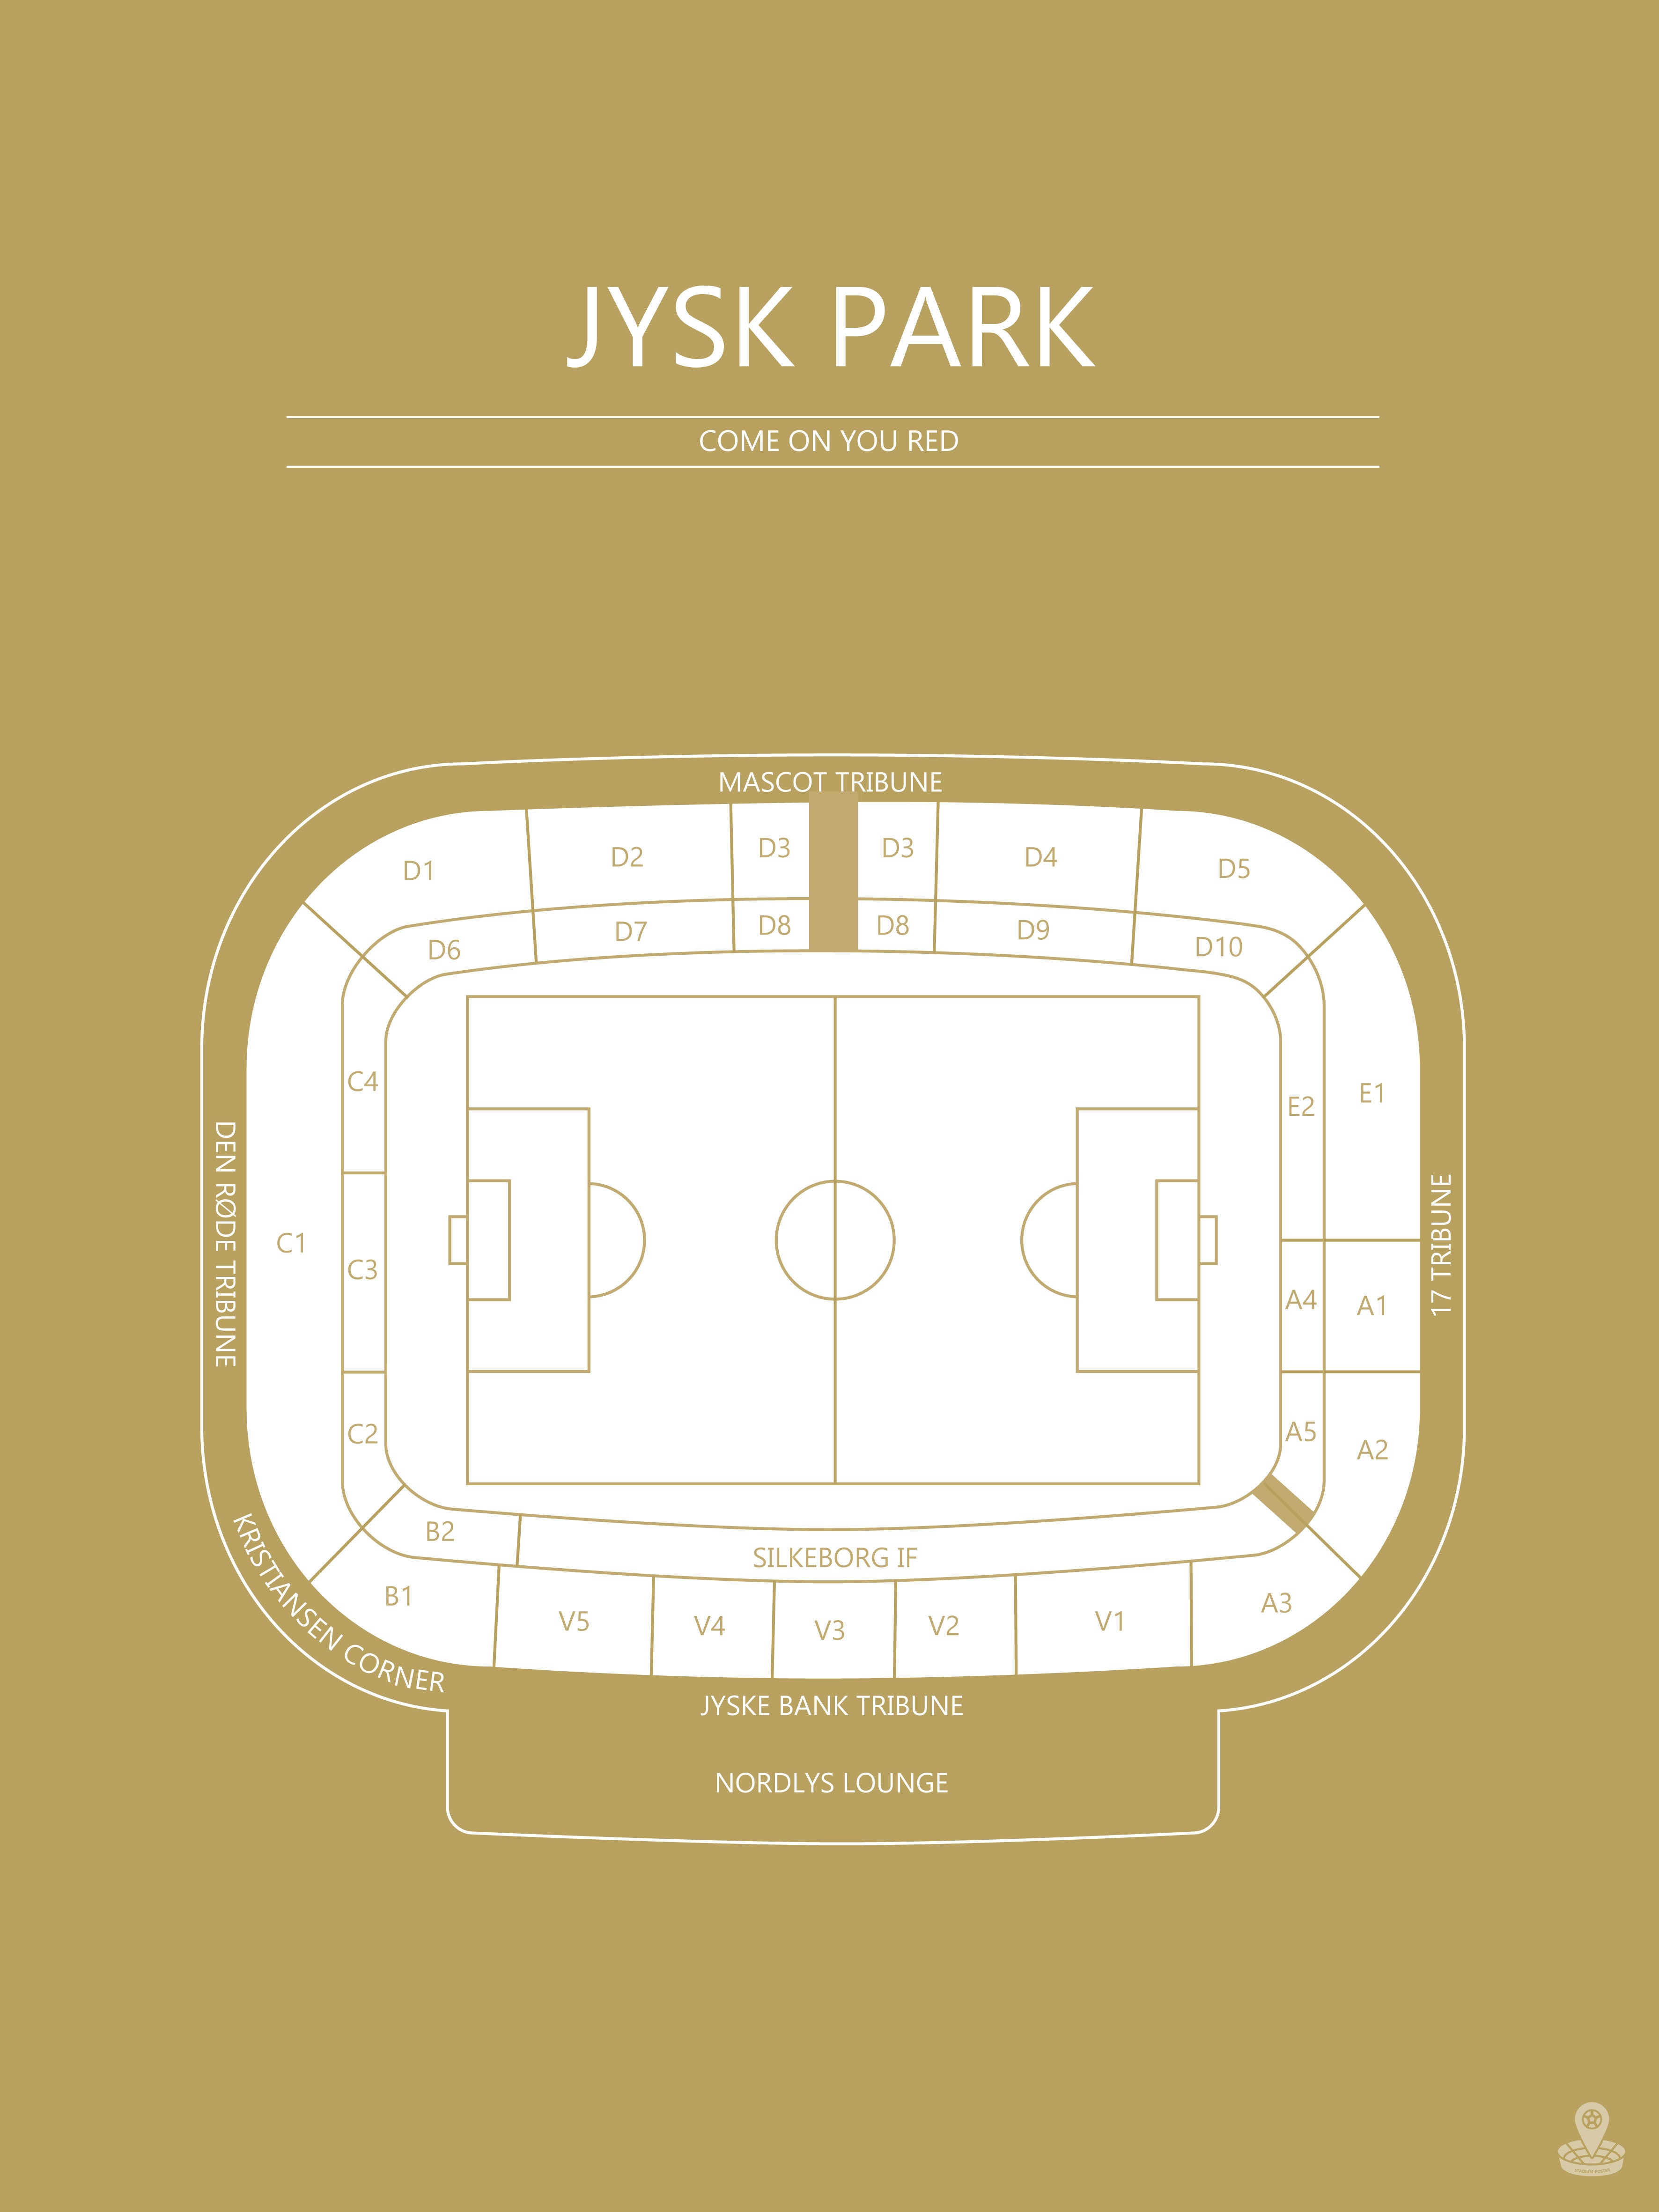 Fodbold plakat Silkeborg Jysk Park Karry